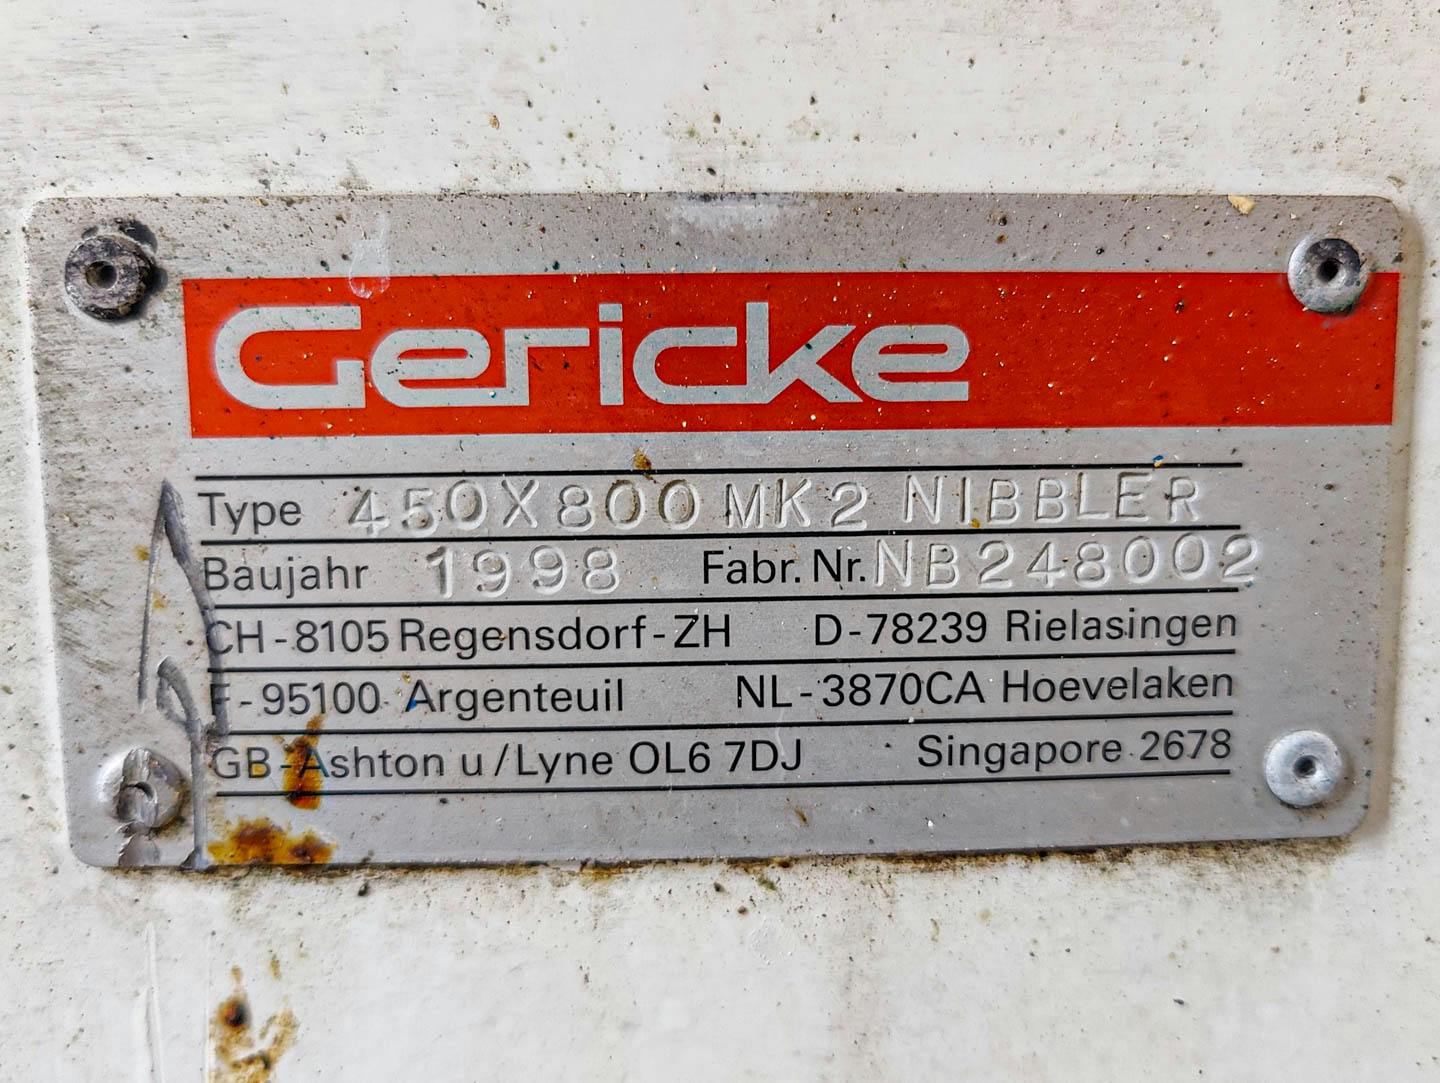 Gericke 450x800 MK2 NIBBLER - Setaccio granulatore - image 11